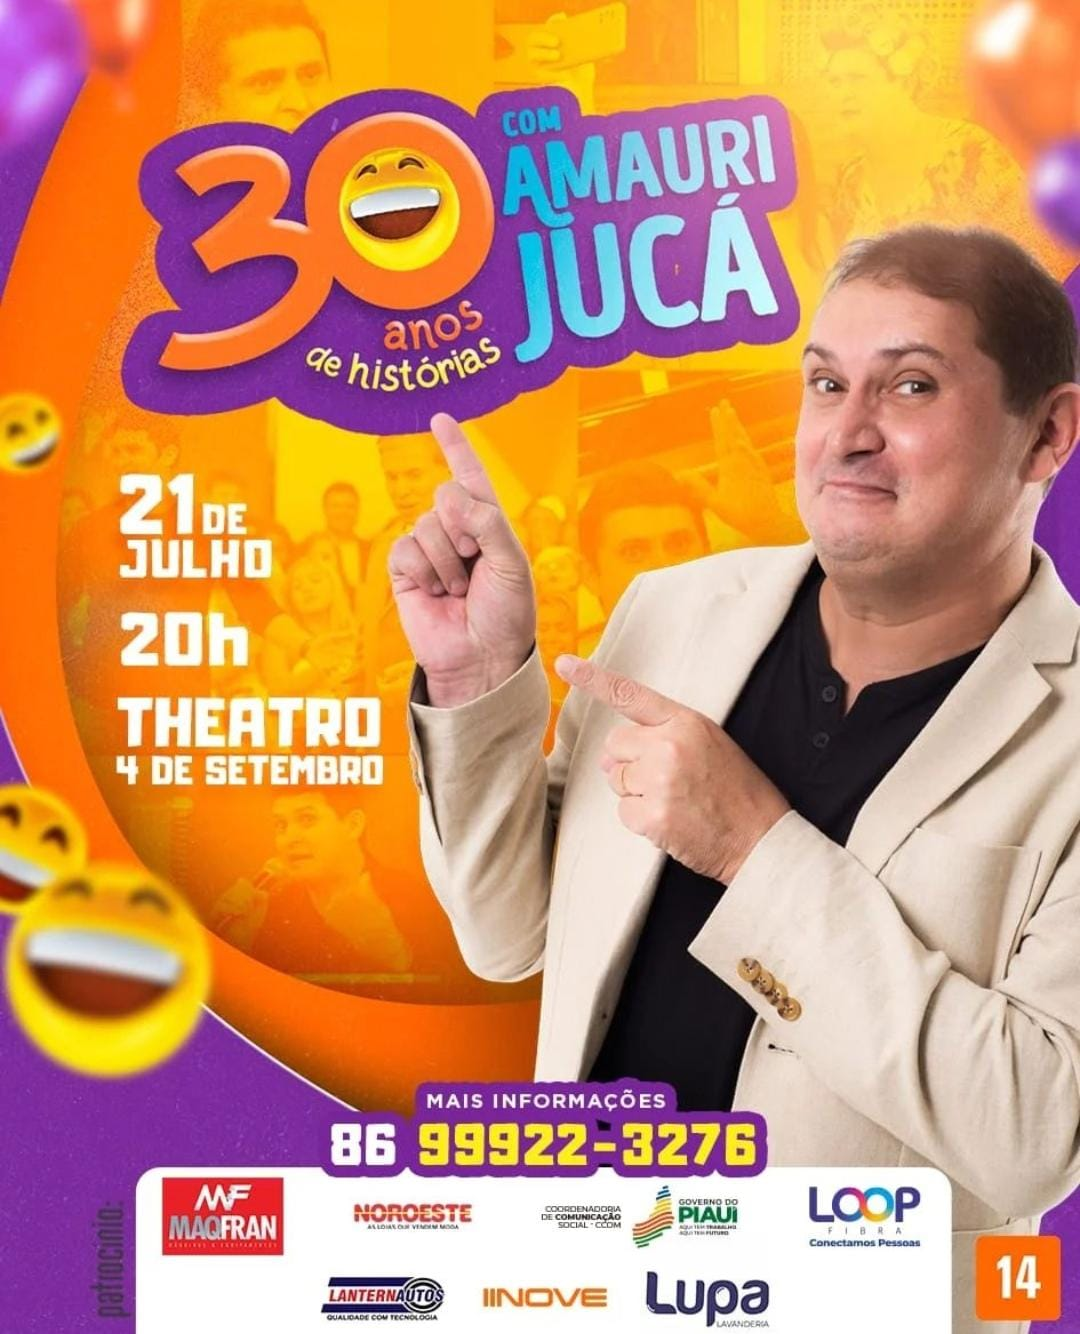 Amauri Jucá celebrará 30 anos de carreira em show neste domingo (21), no Theatro 4 de Setembro